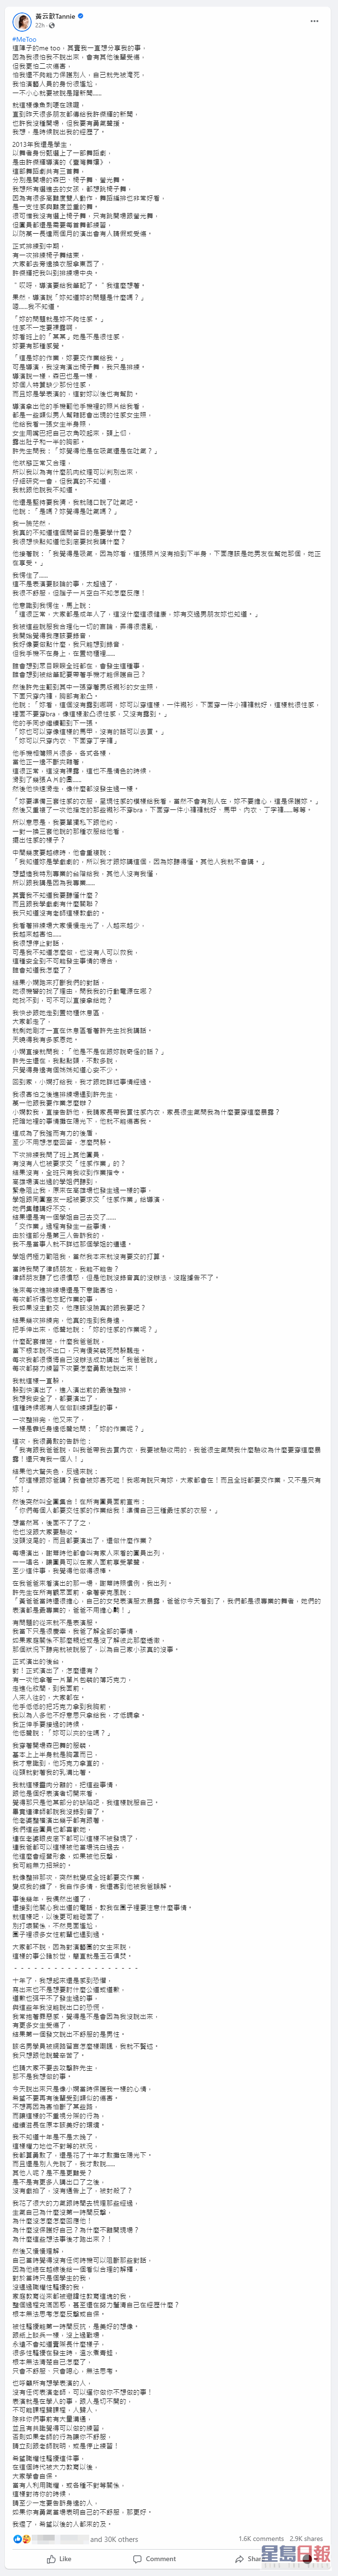 黄云歆在fb撰写长文指控许杰辉。